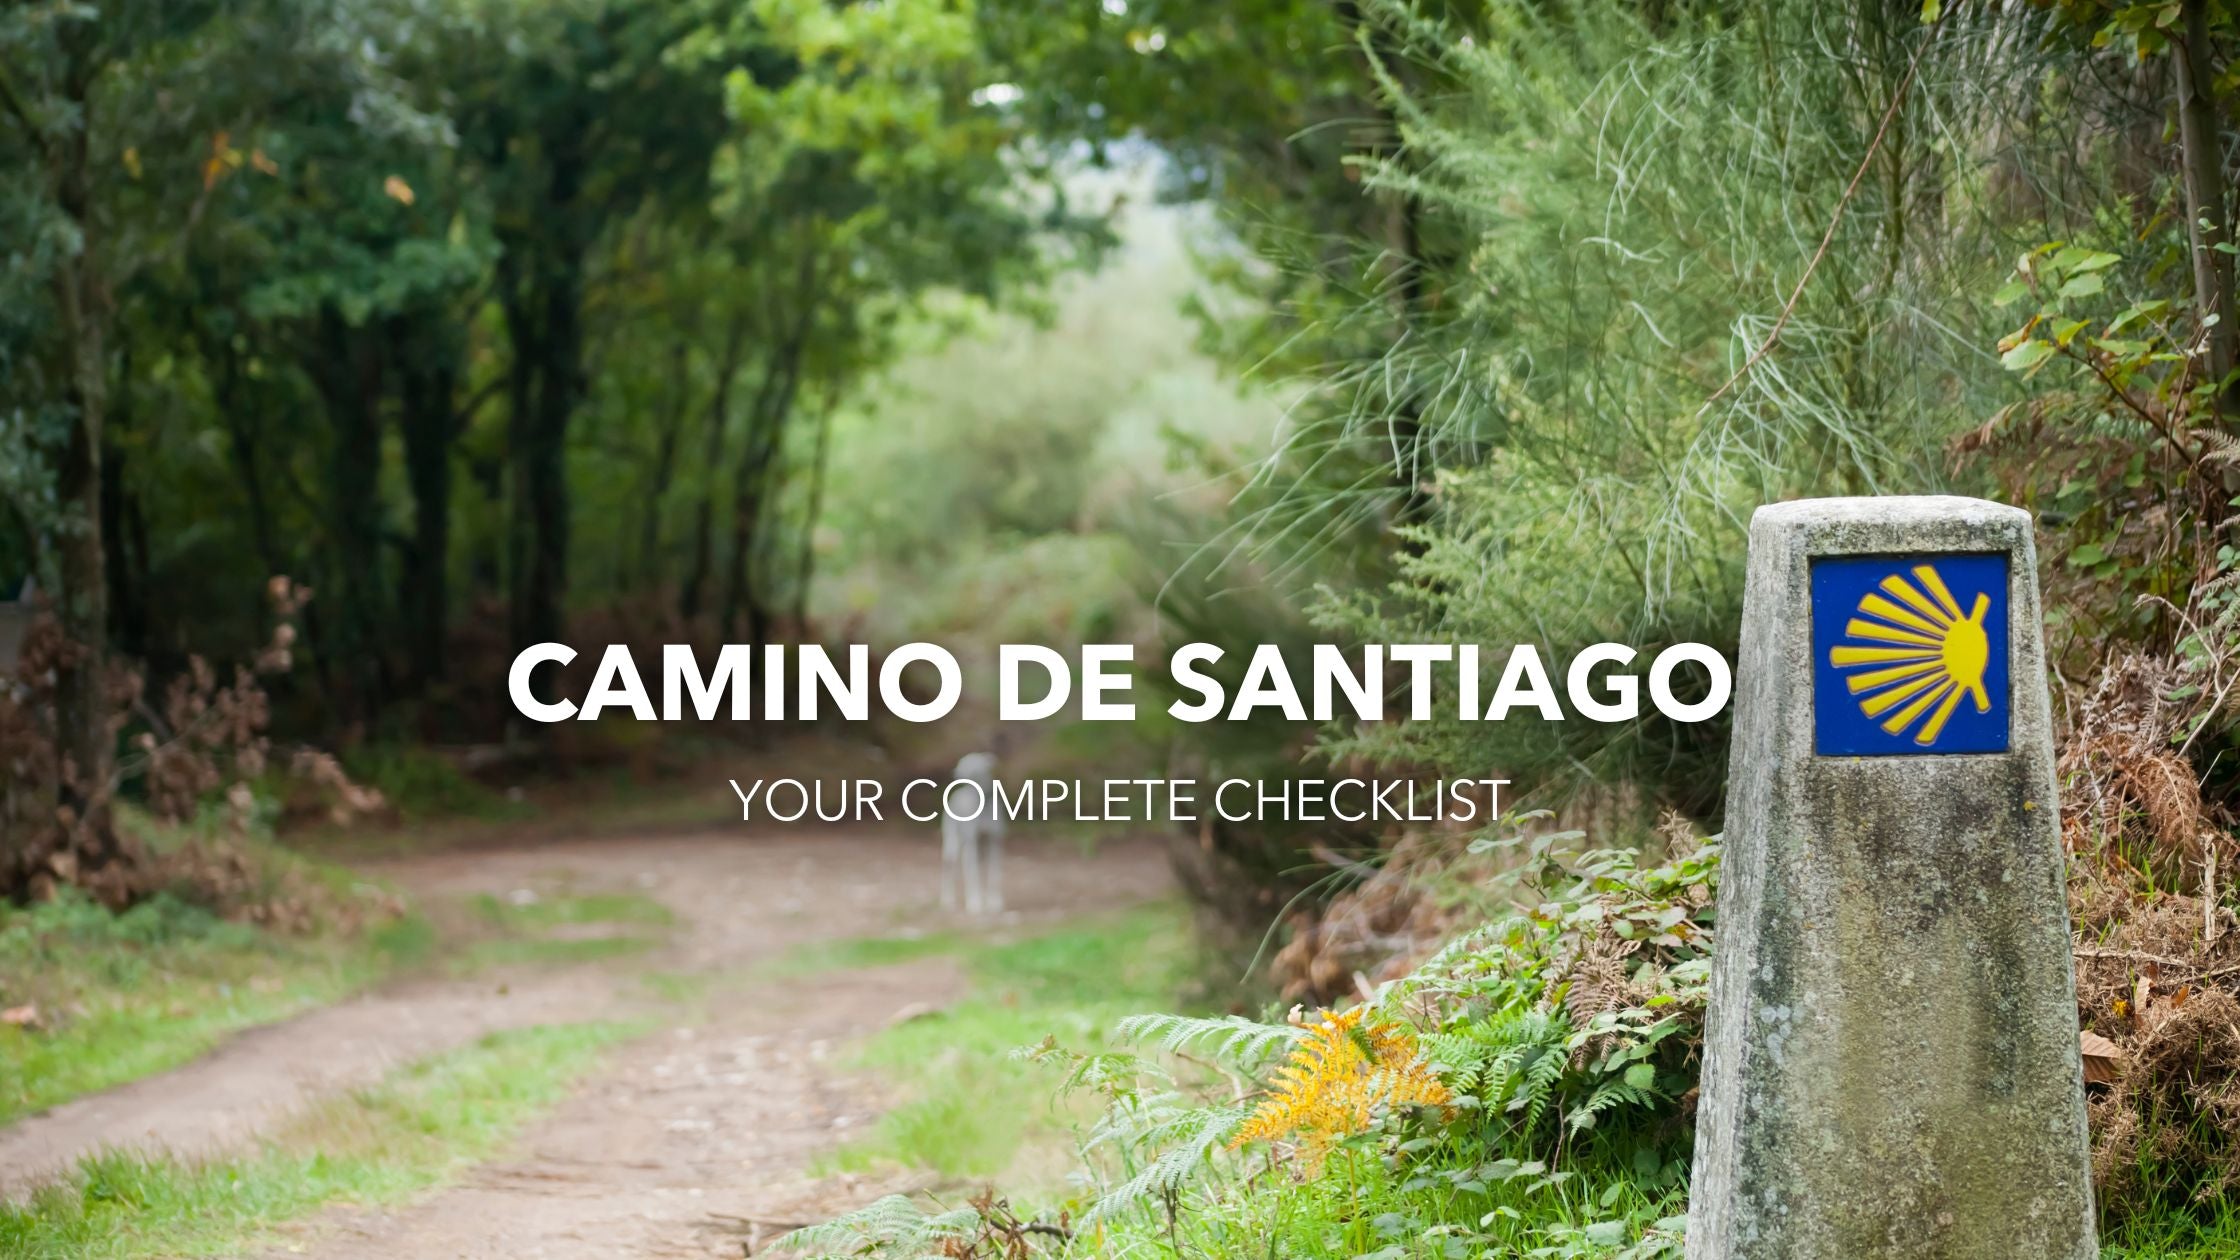 Camino de Santiago - Your Complete Checklist